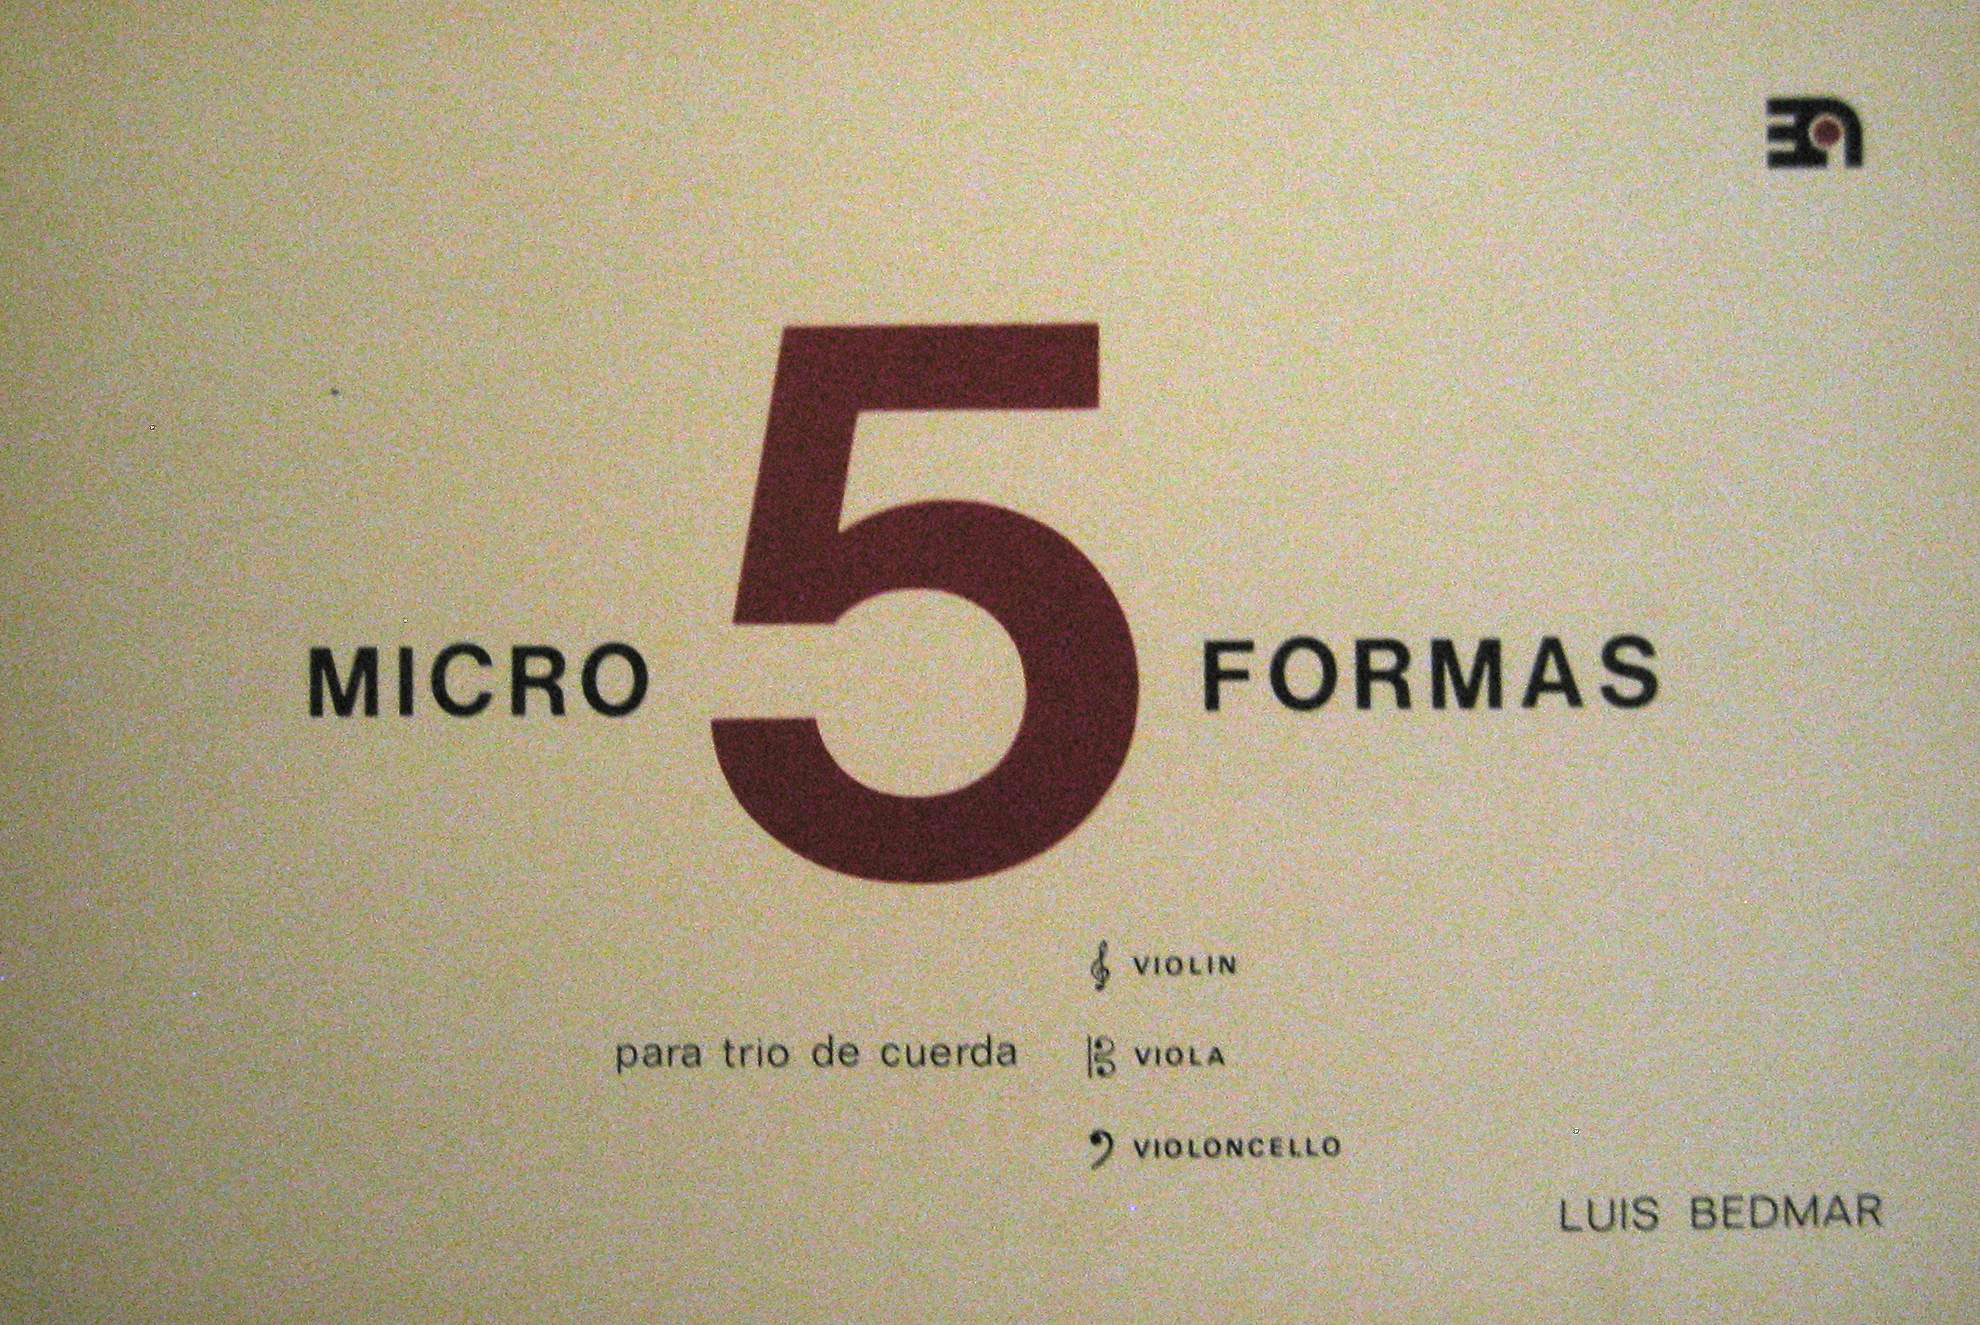 5 microformas
Para trío de cuerda